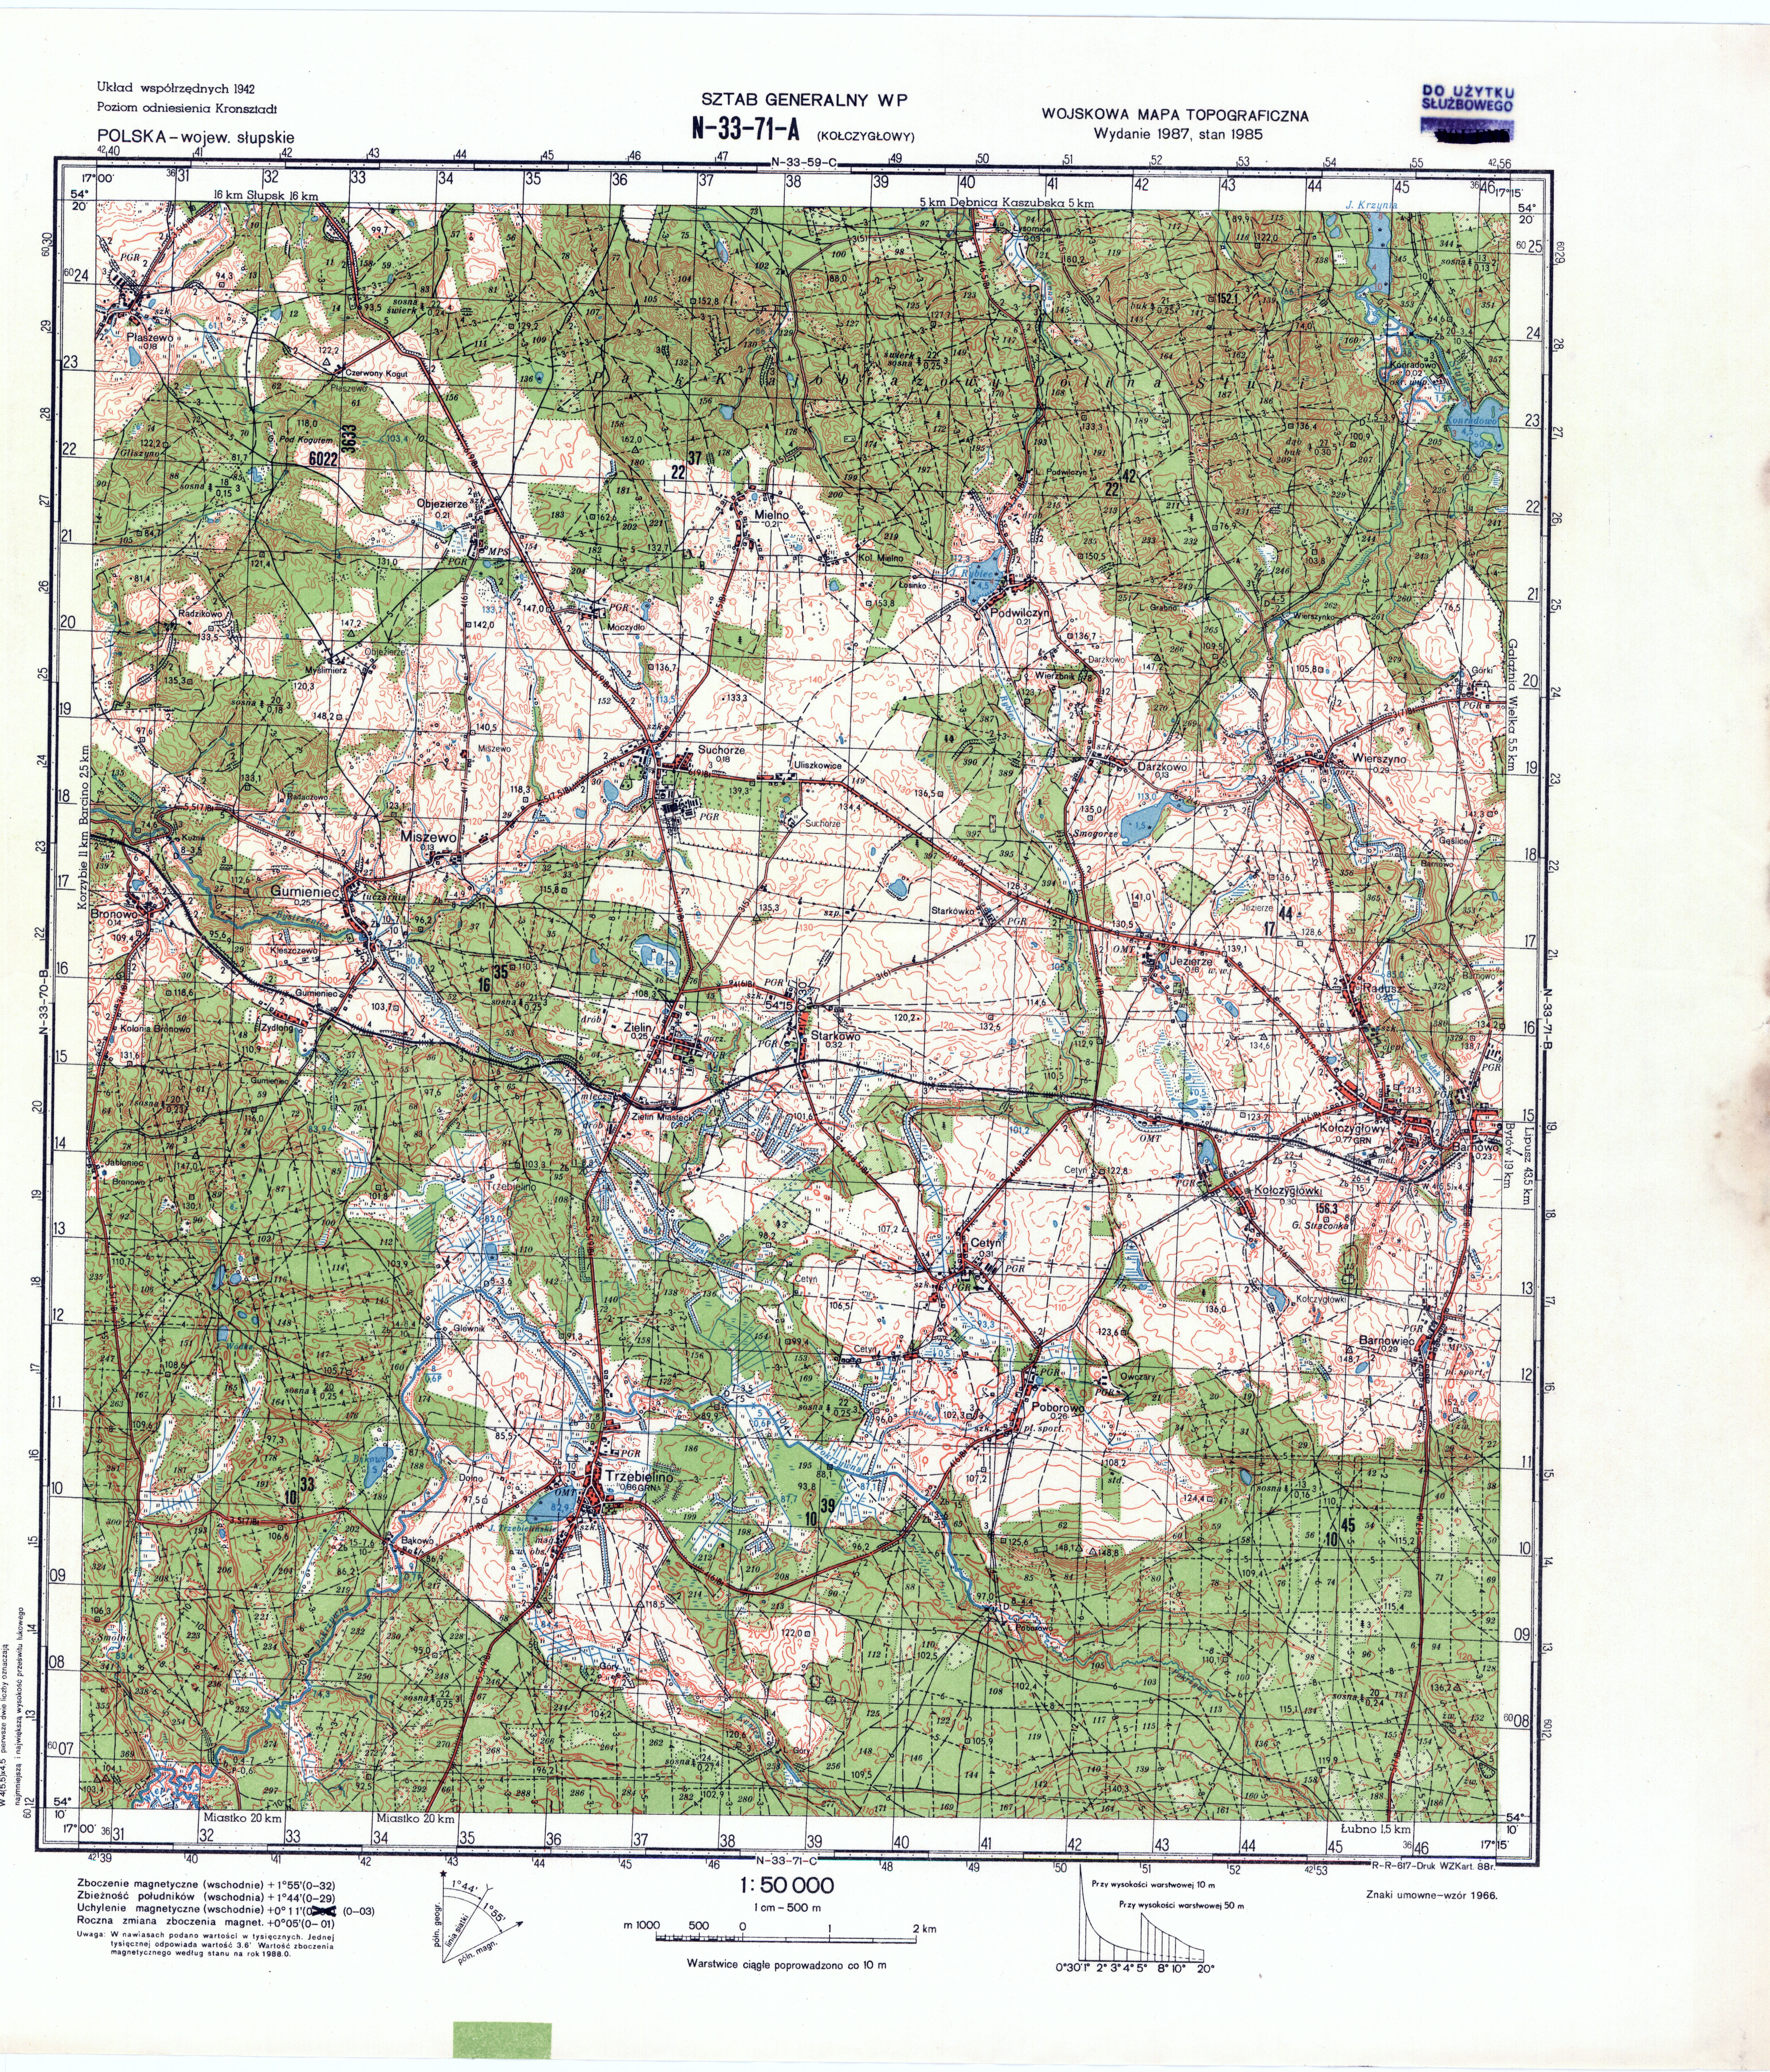 Mapy topograficzne LWP 1_50 000 - N-33-71-A_KACZYGLOWY_1988.jpg